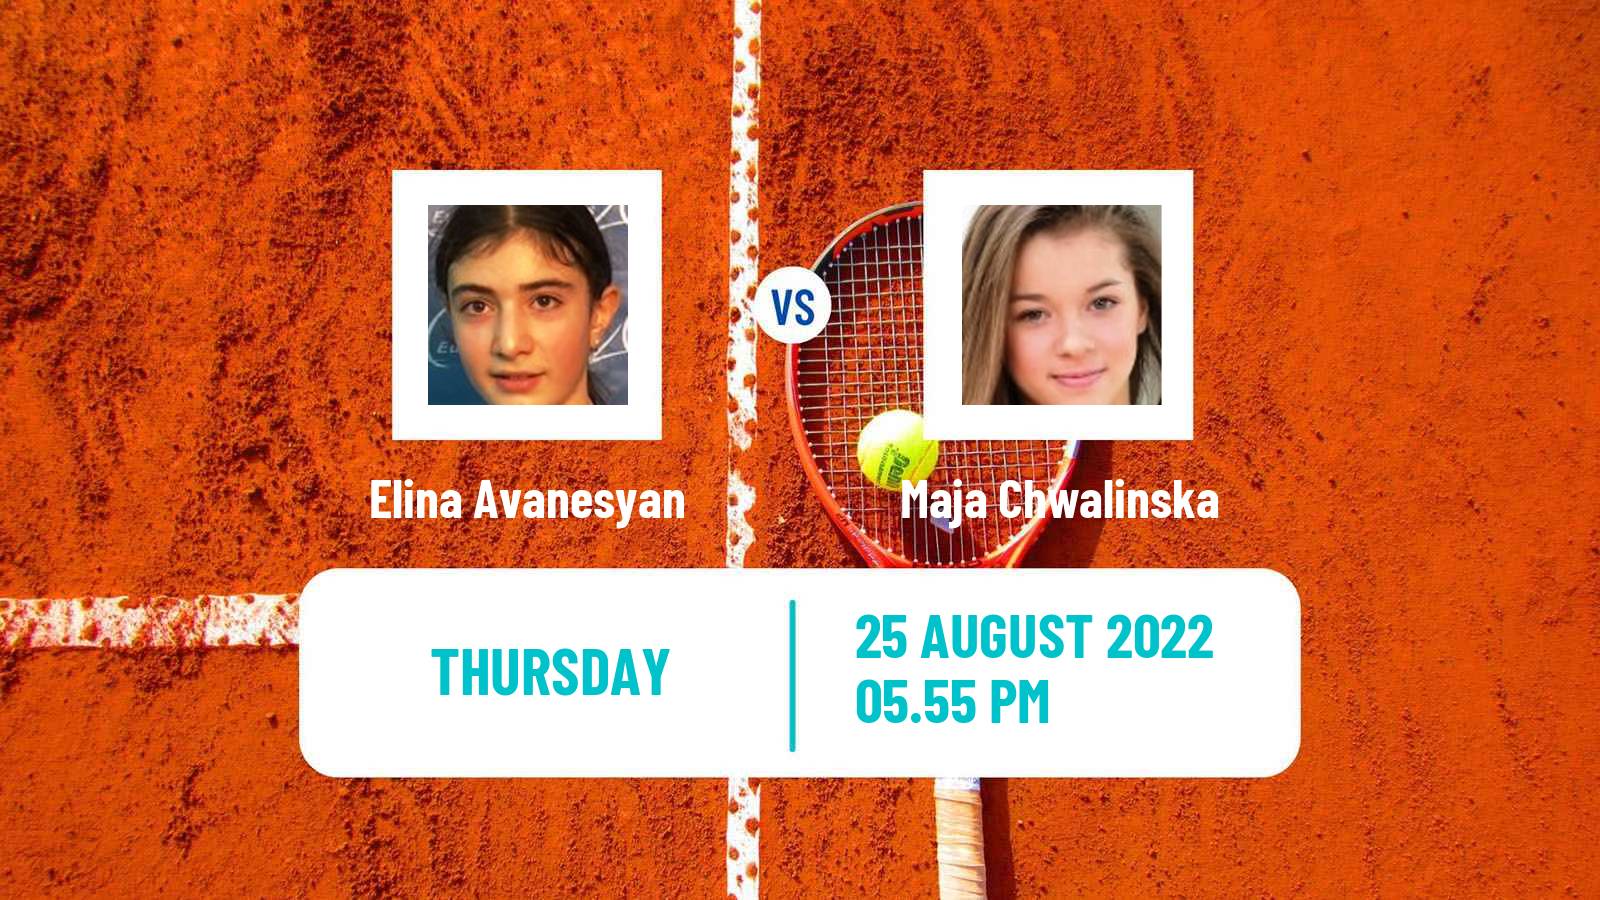 Tennis WTA US Open Elina Avanesyan - Maja Chwalinska